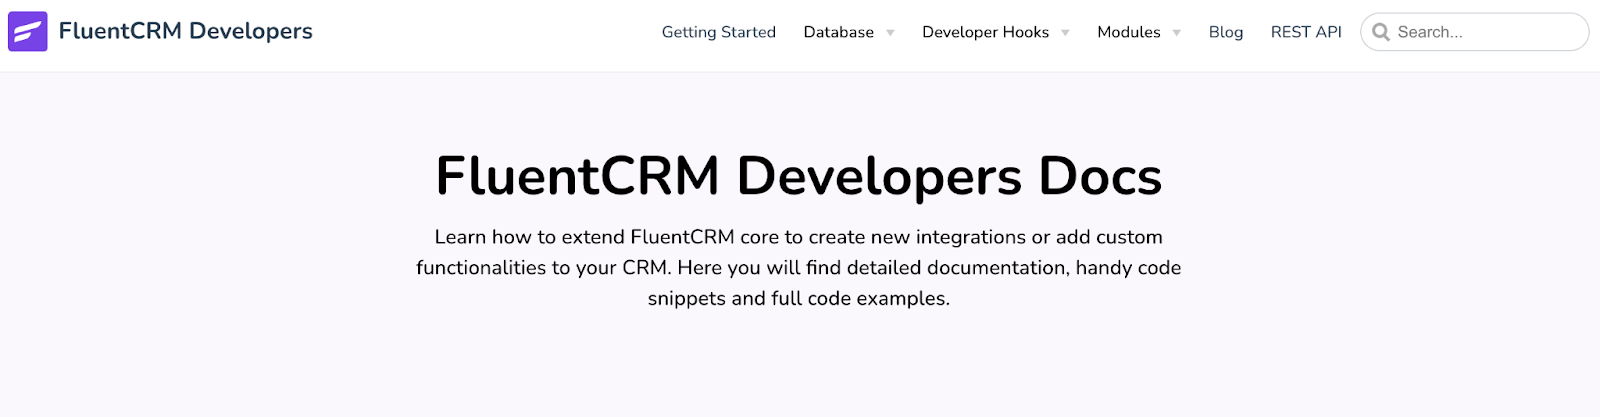 fluentcrm developer documentation